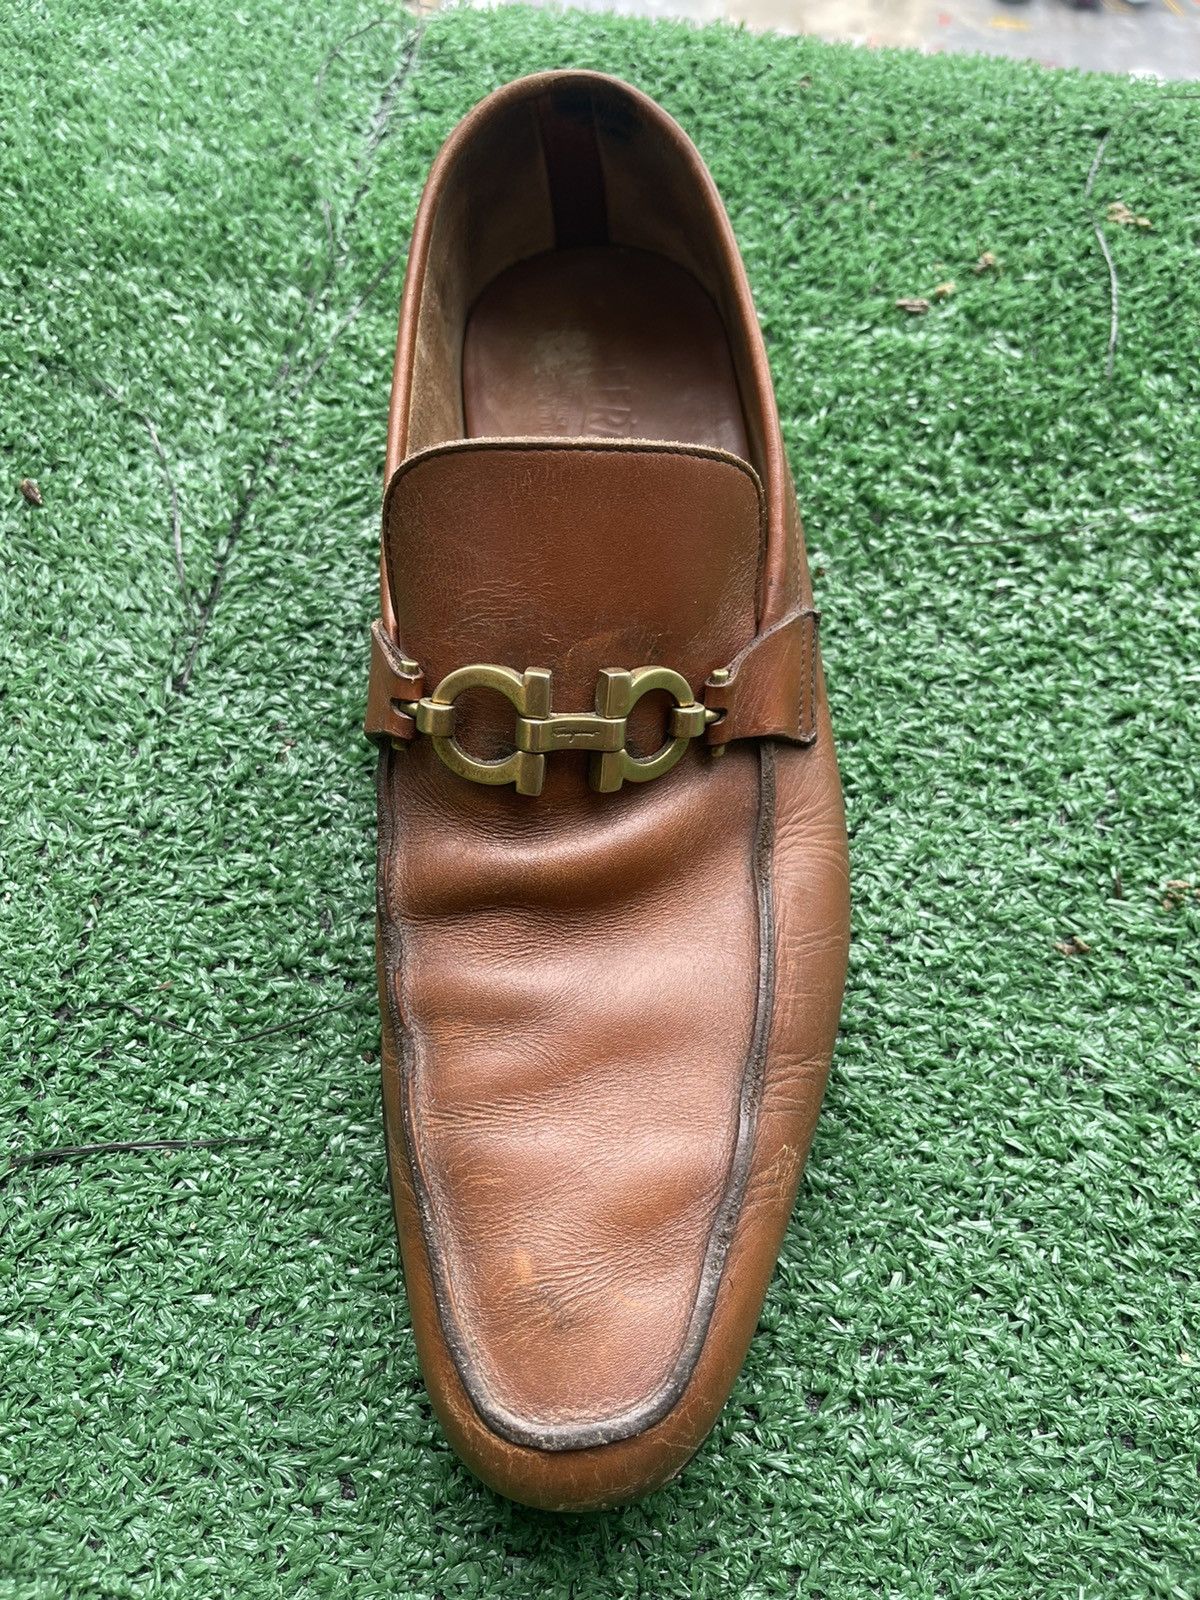 Salvatore Ferragamo Ferragamo Leather Shoe Size US 9 / EU 42 - 3 Thumbnail